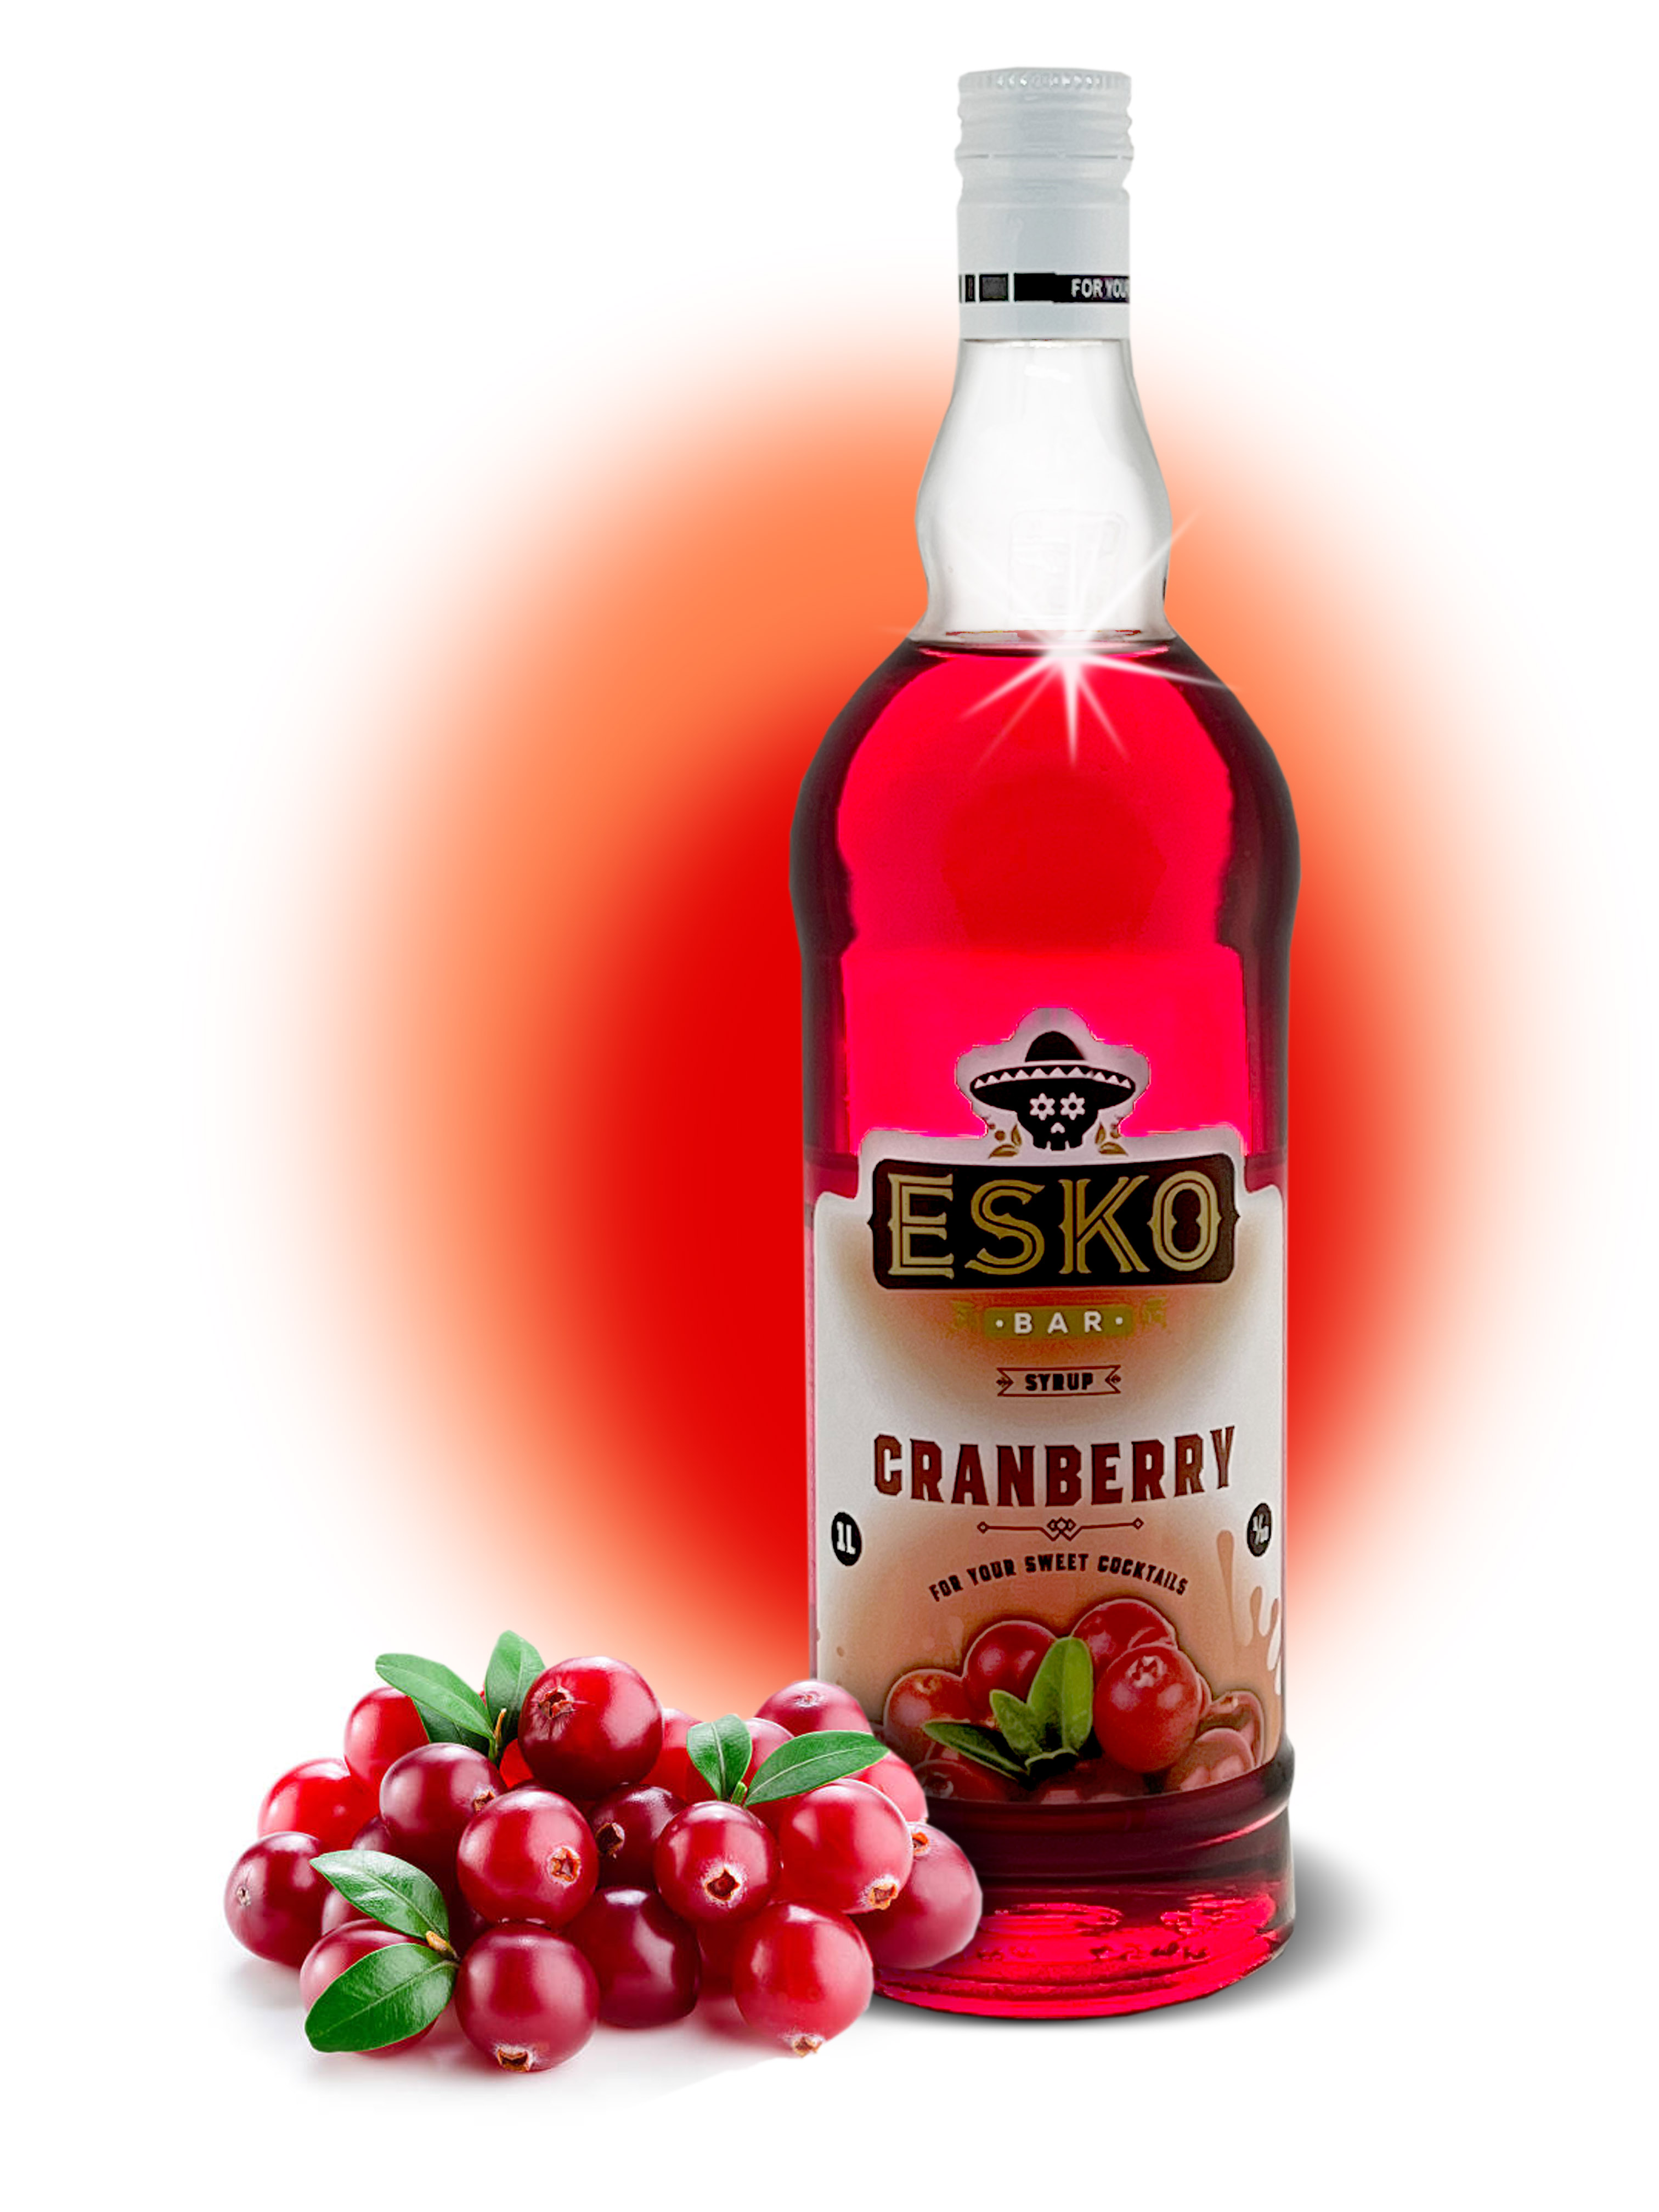 Сироп Esko Bar Cranberry (1L) изображение 1